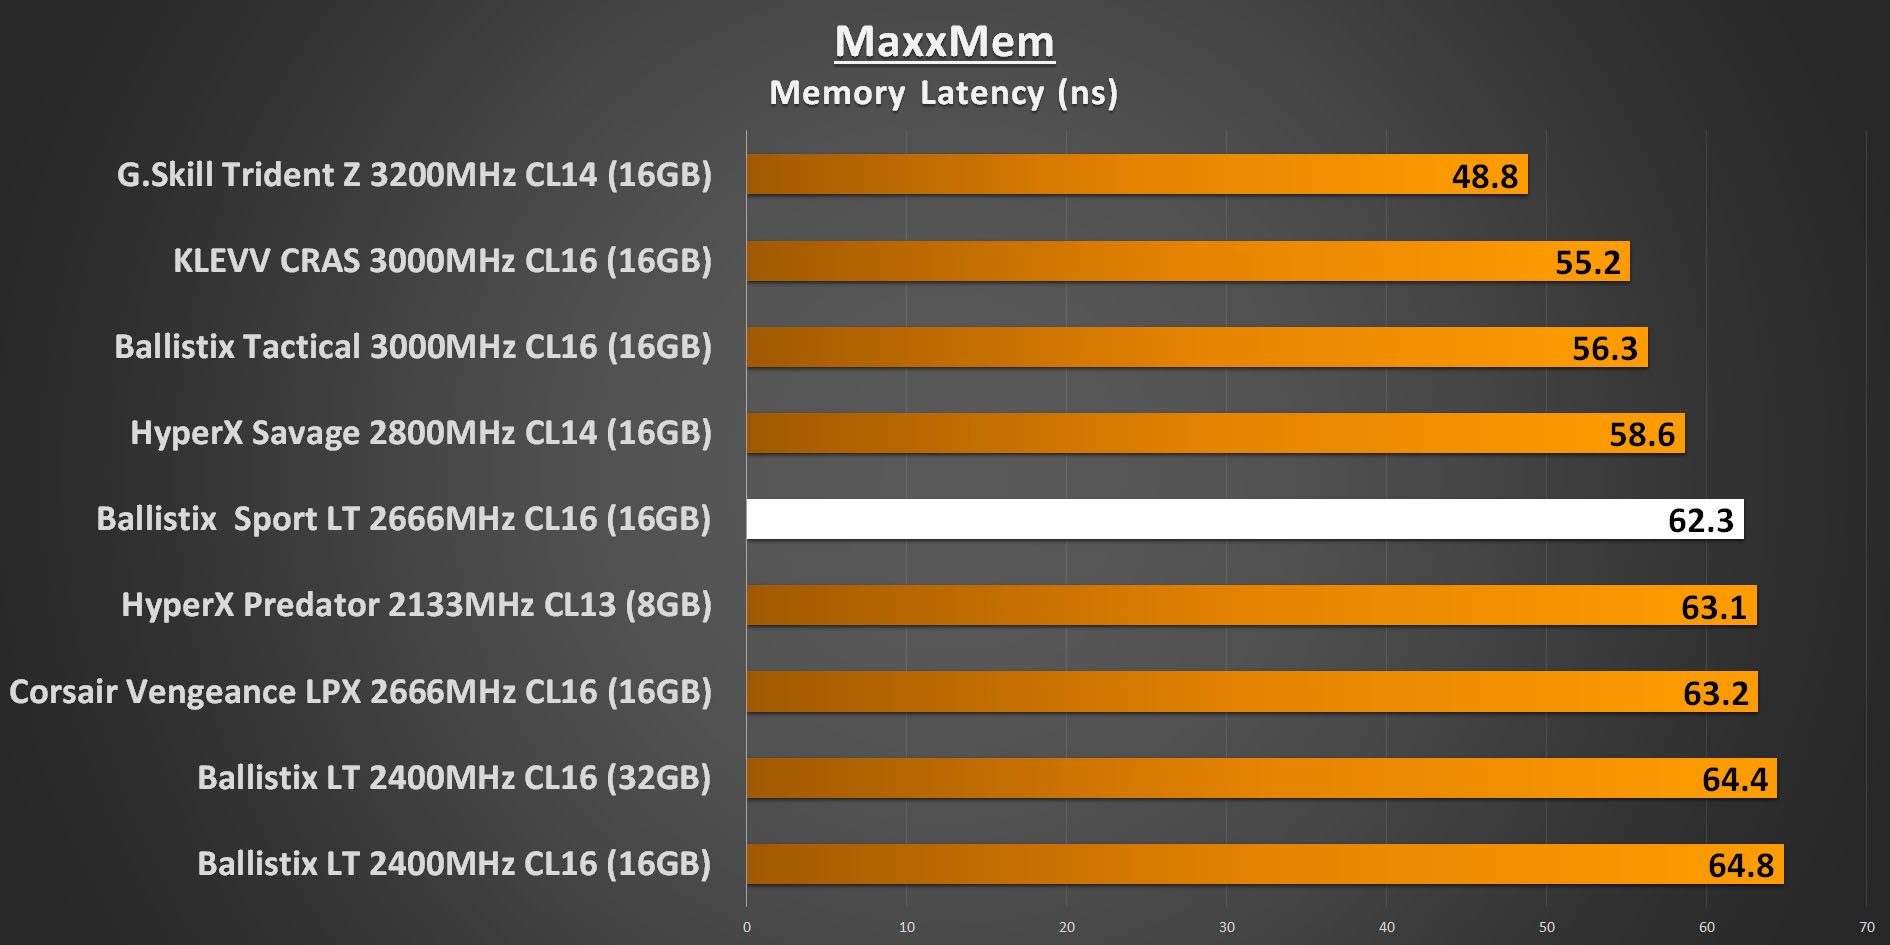 Ballistix Sport LT 2666MHz - MaxxMem Memory Latency Performance